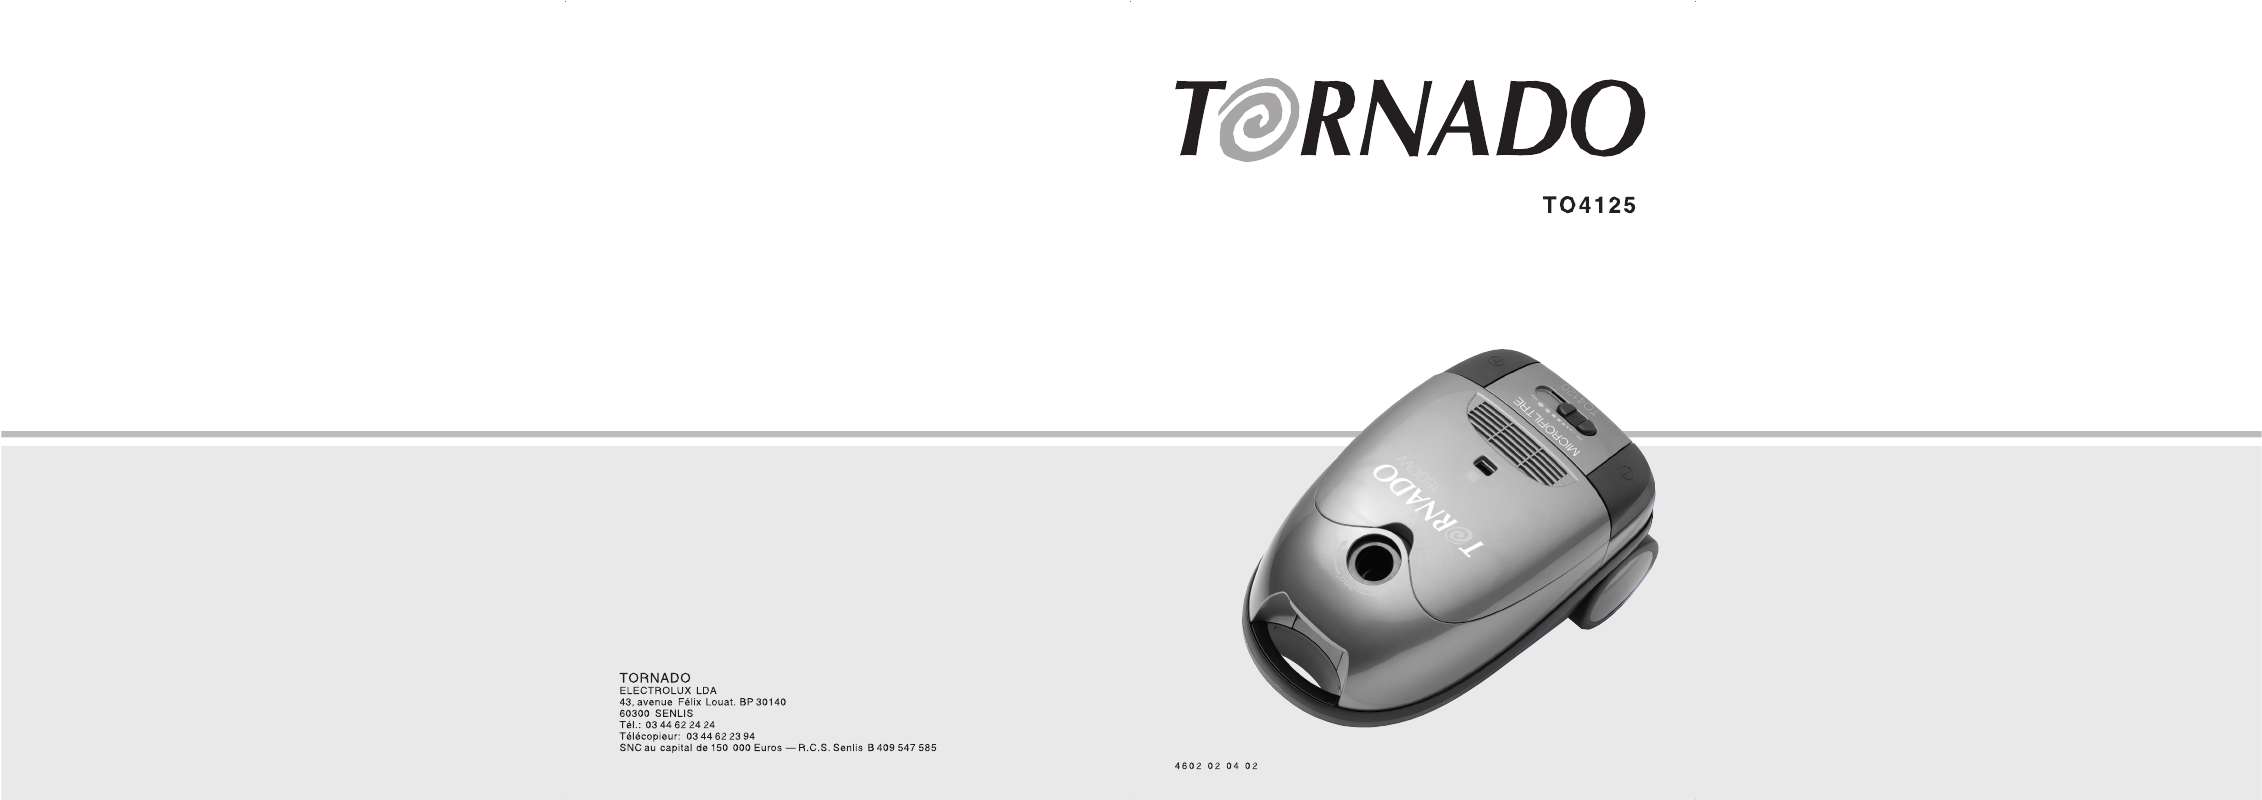 Guide utilisation TORNADO TO4125 de la marque TORNADO